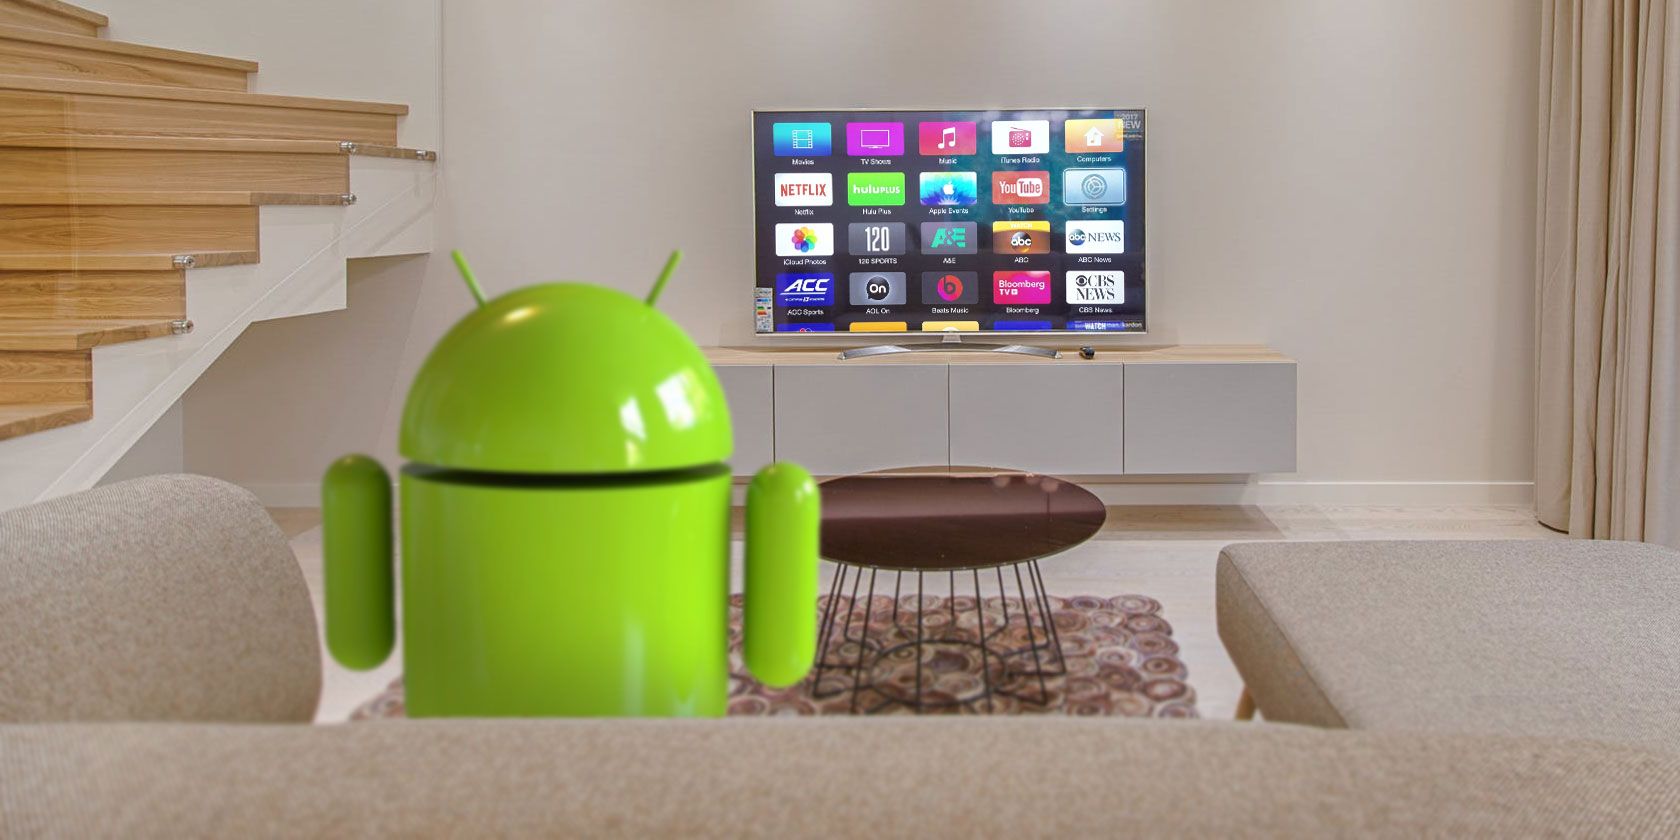 Управление телевизором на андроид. Best Android TV Box. Как управлять Smart TV С телефона.